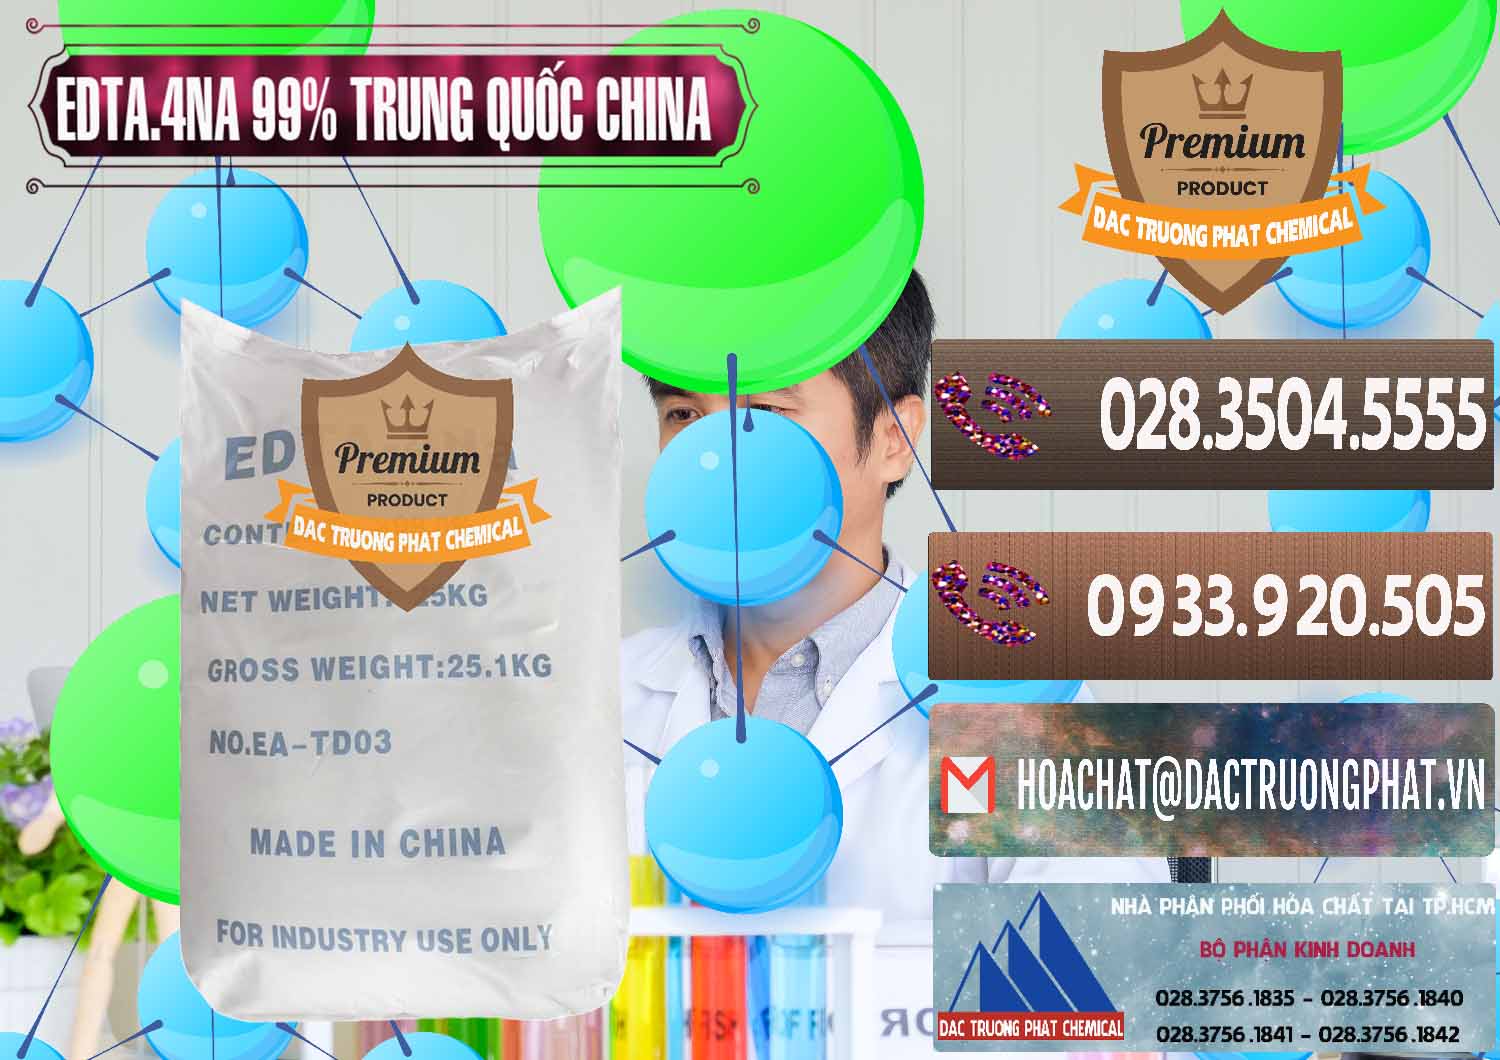 Nơi chuyên bán _ phân phối EDTA.4NA - EDTA Muối 99% Trung Quốc China - 0292 - Nhà nhập khẩu và phân phối hóa chất tại TP.HCM - hoachatviet.net